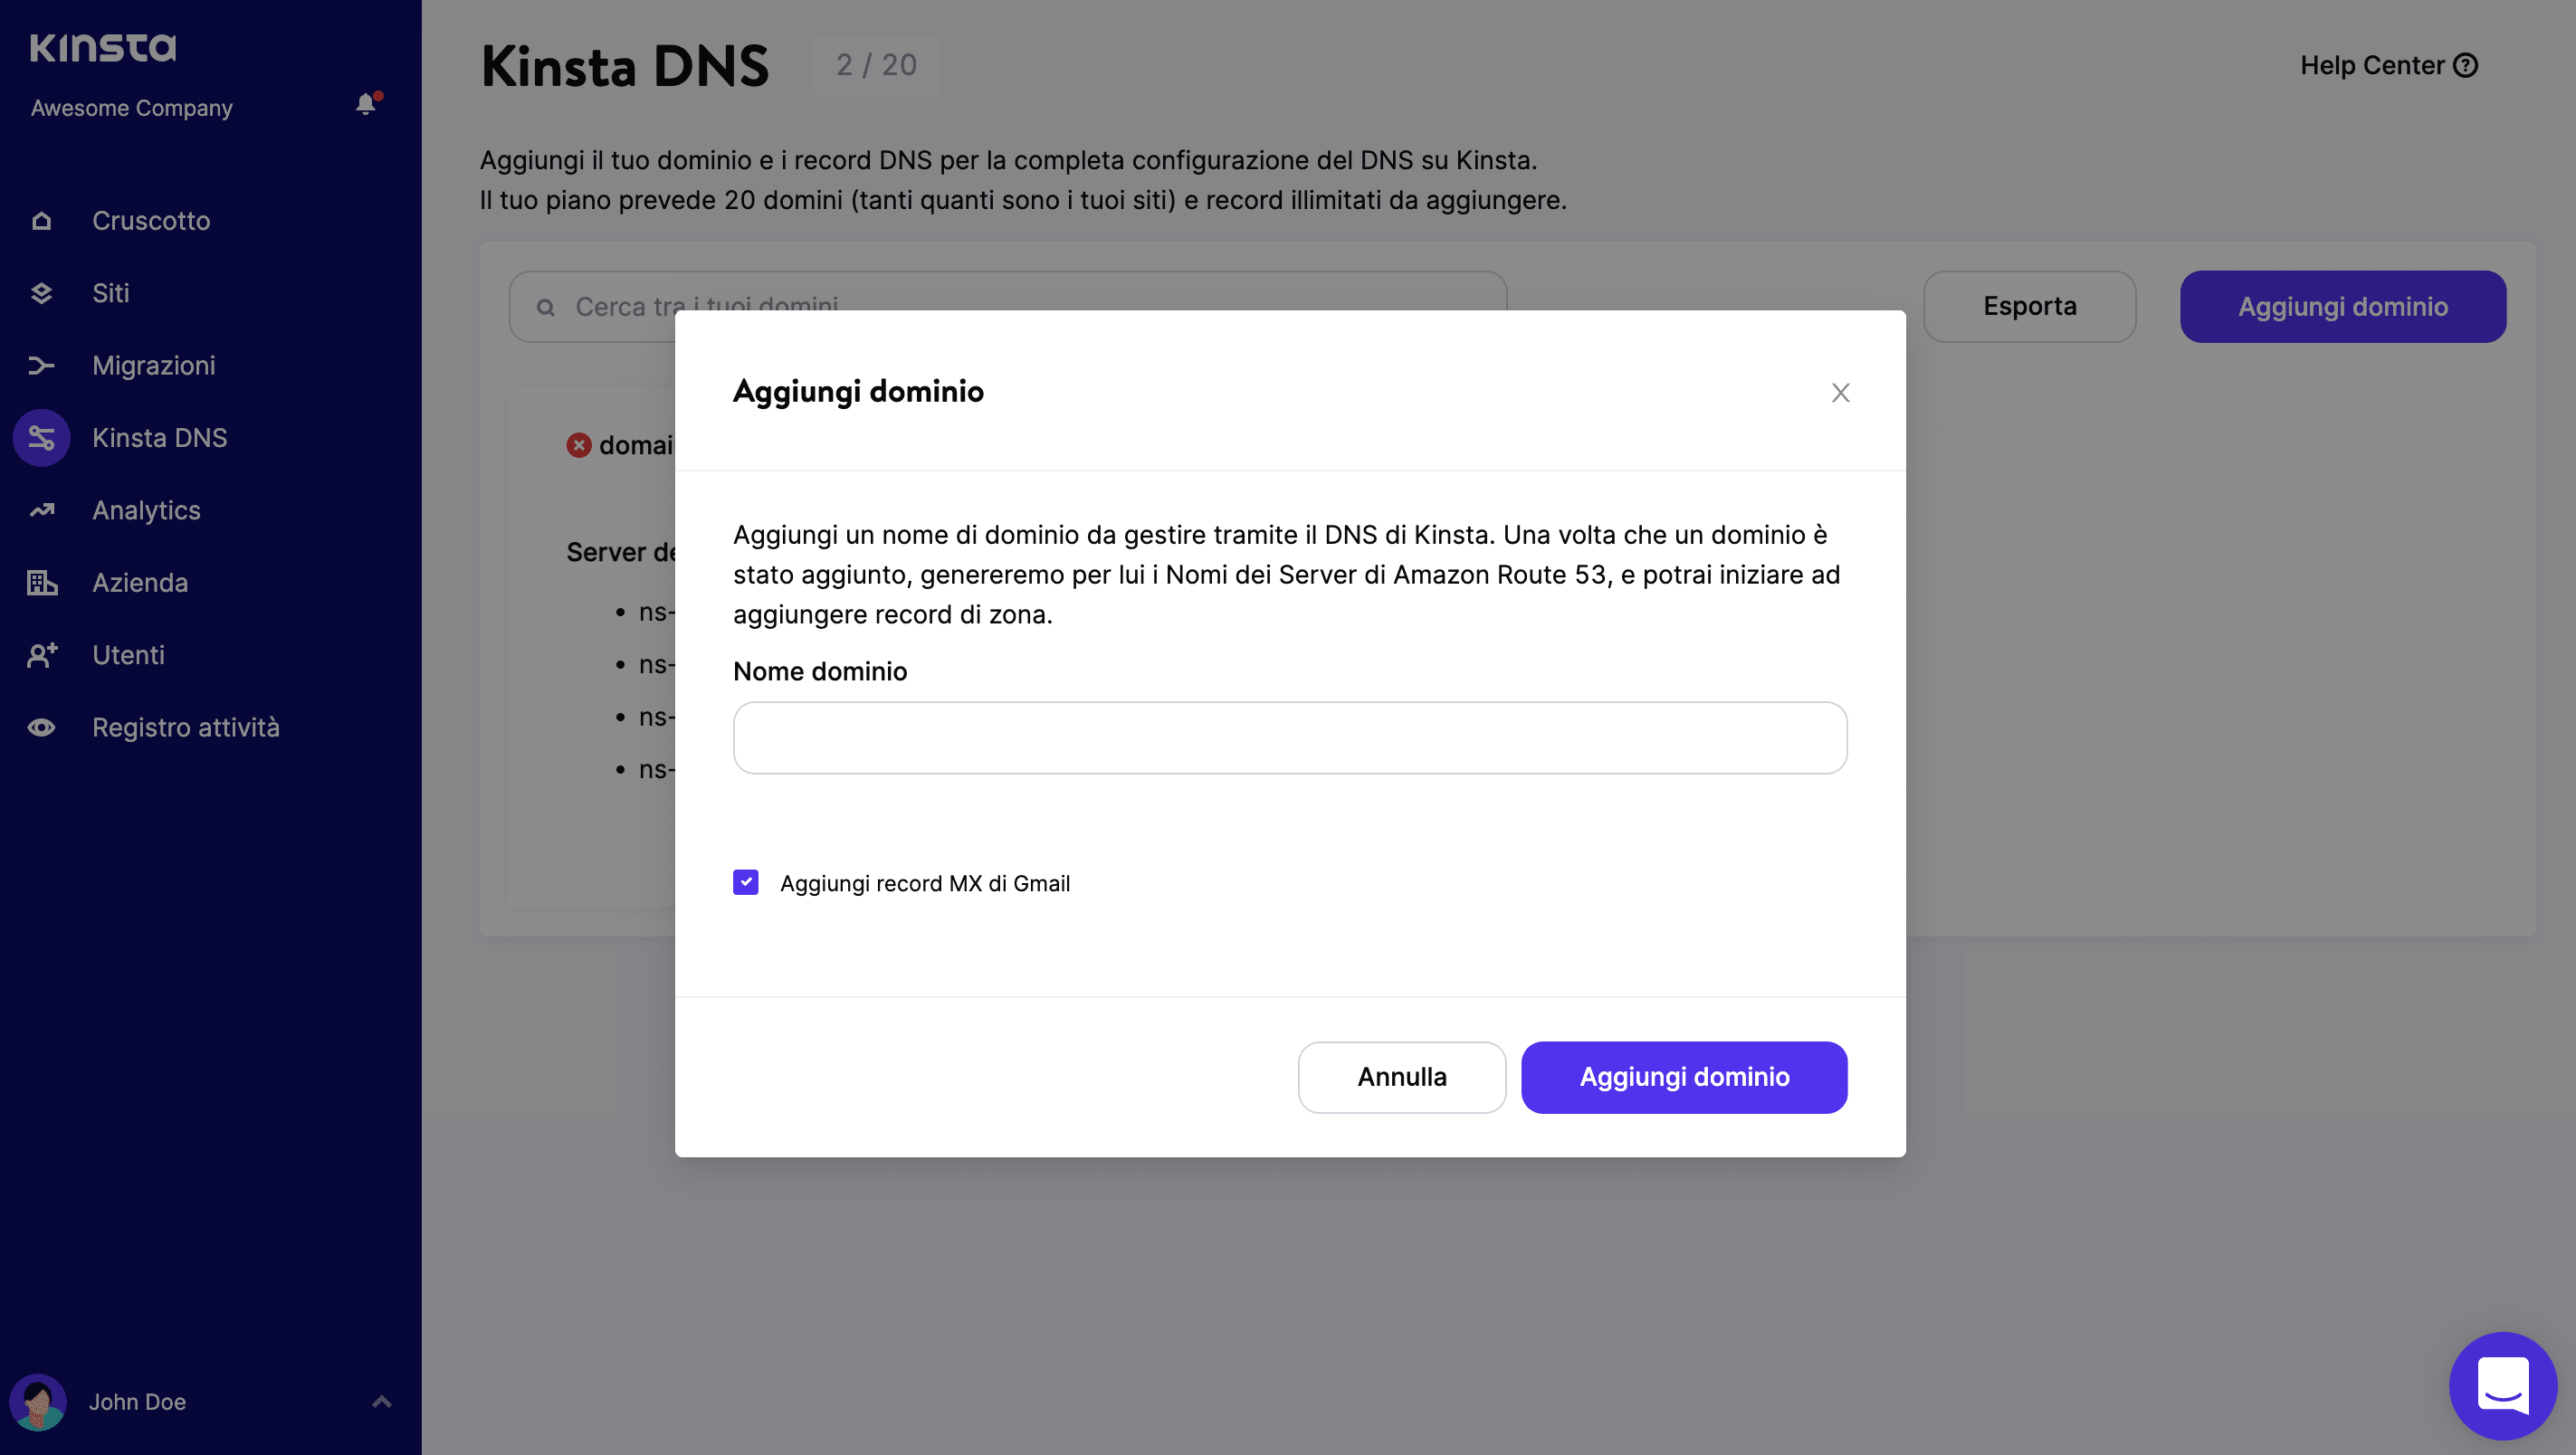 Aggiungere automaticamente i record MX di Gmail con Kinsta DNS.